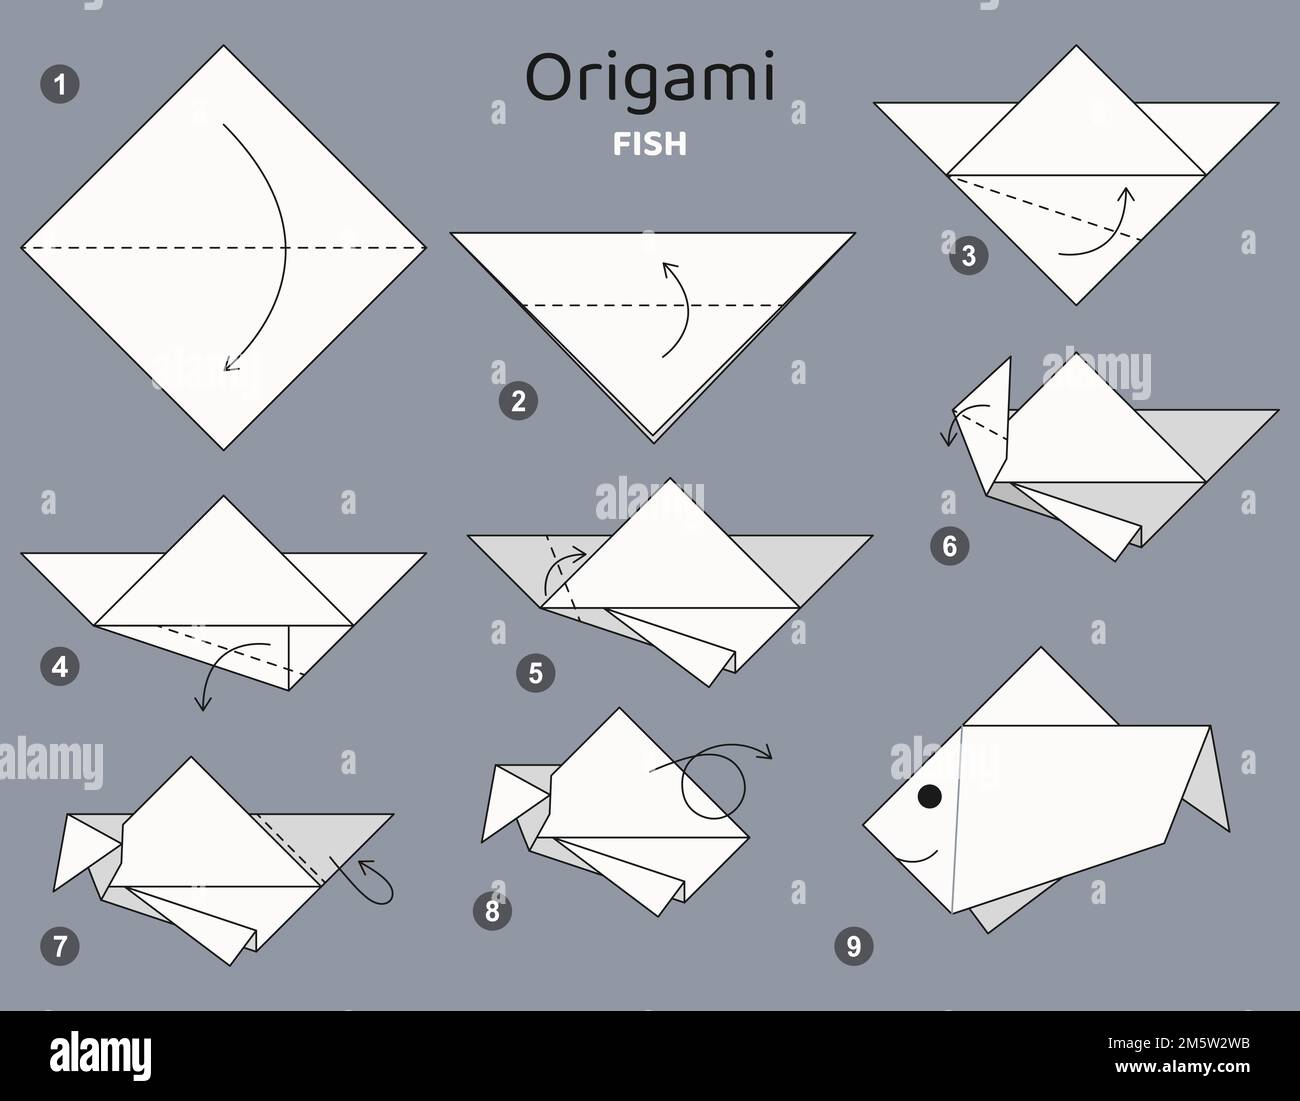 Origami-Tutorial. Origami-Programm für Kinder, Fisch. Stock Vektor